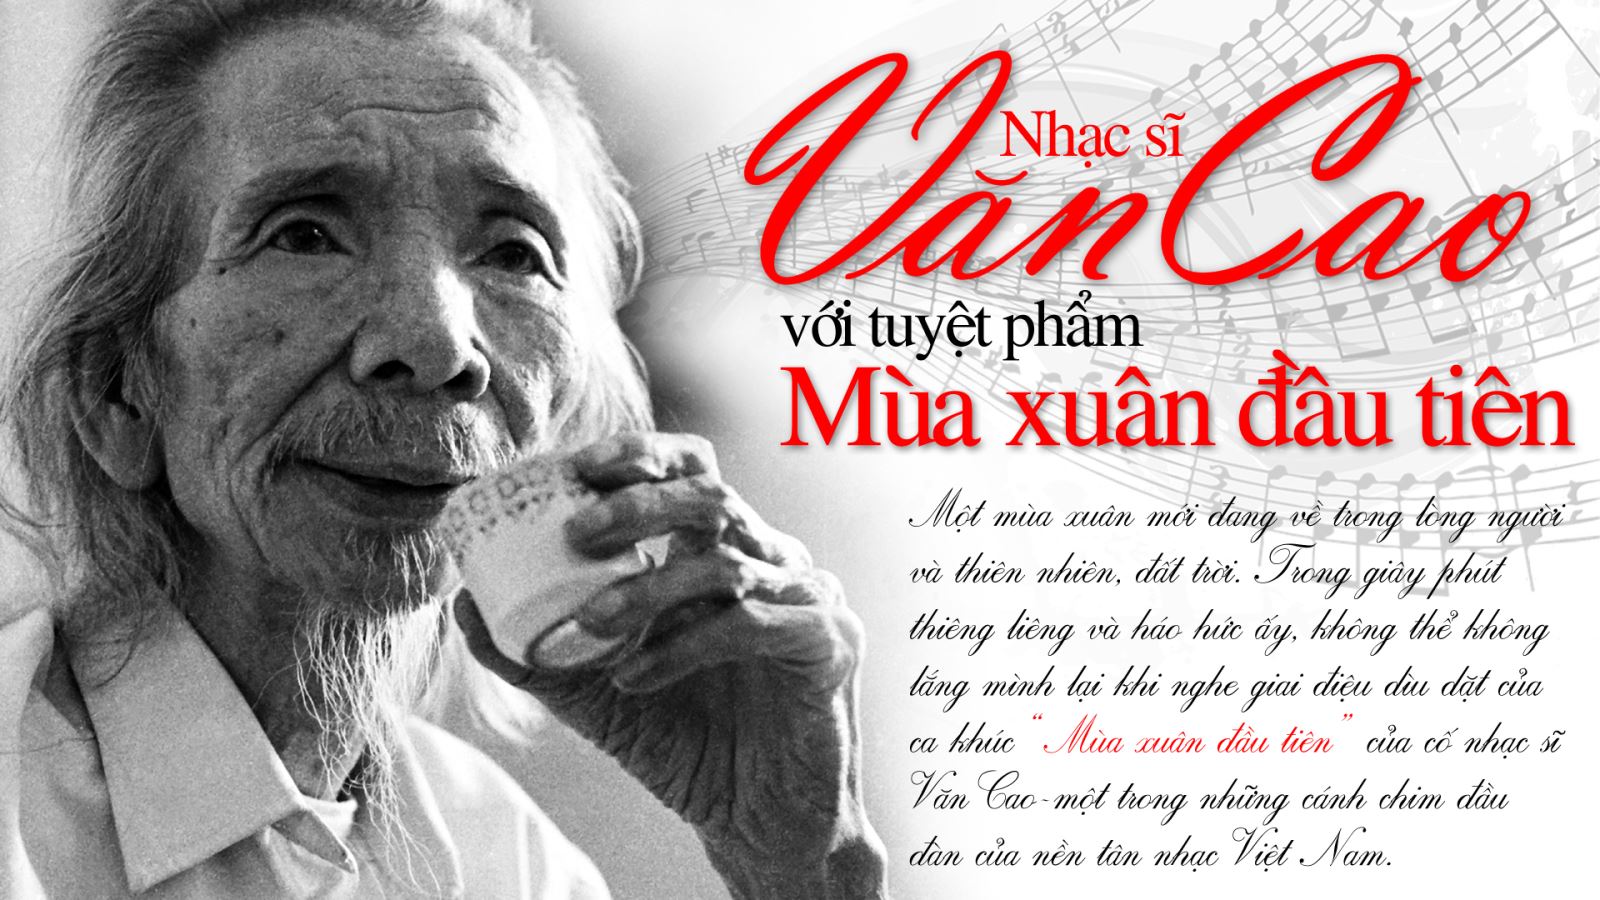 'Mùa xuân đầu tiên' là lời tâm sự chung của hàng triệu người dân Việt Nam sống trong thời kỳ chuyển giao năm 1976.